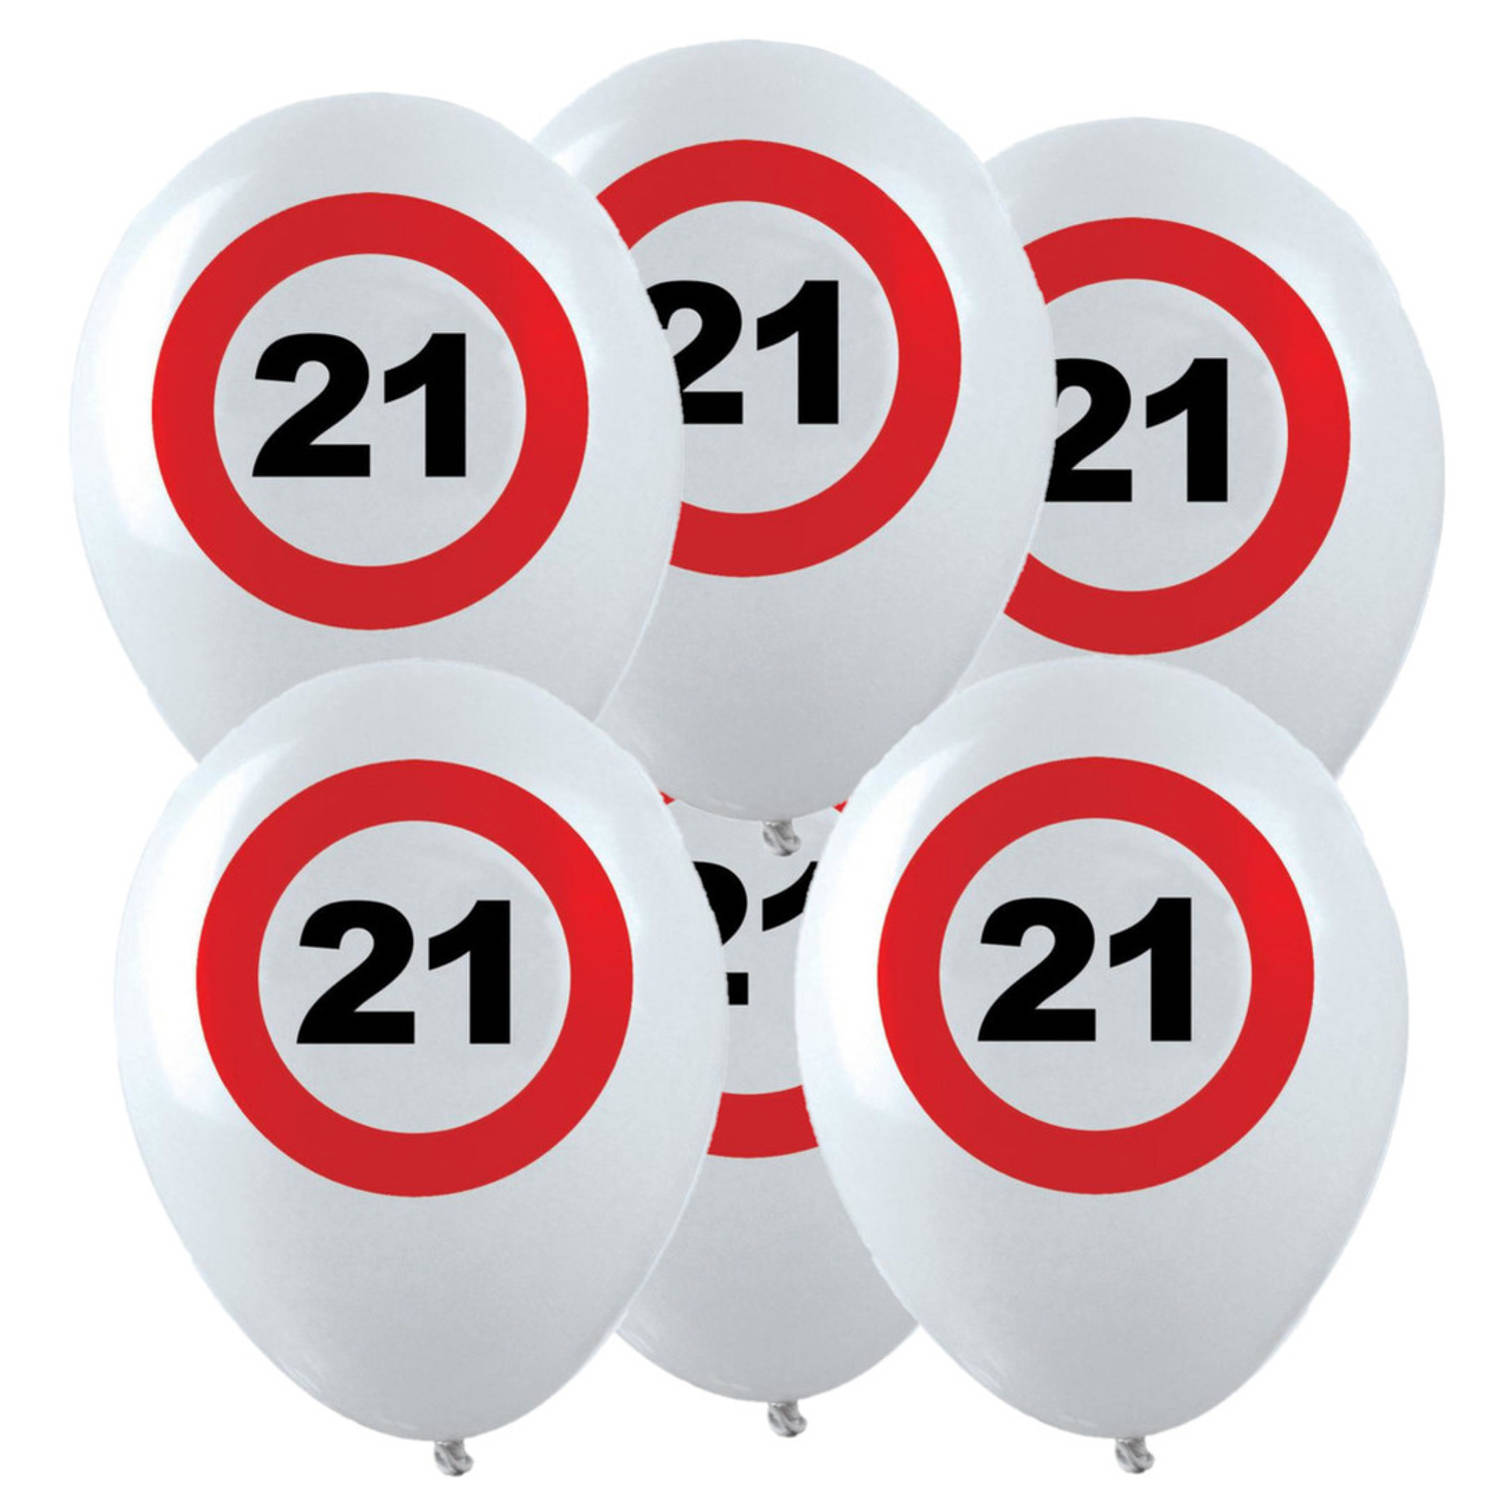 24x Leeftijd verjaardag ballonnen met 21 jaar stopbord opdruk 28 cm - Ballonnen